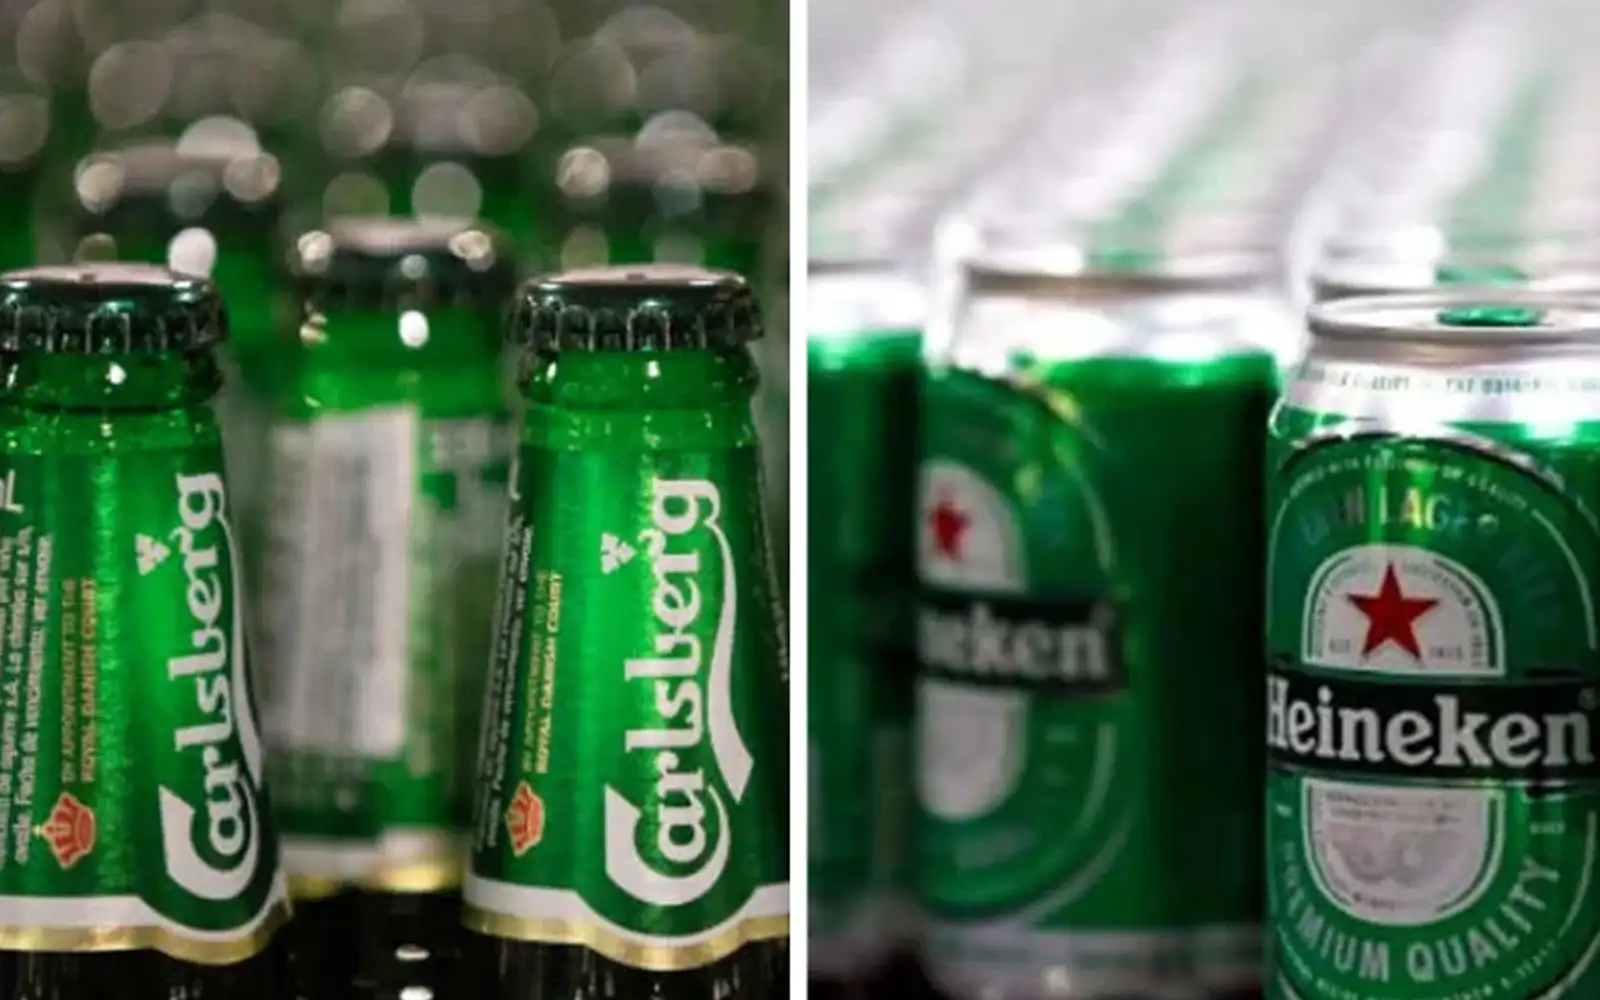 heineken, carlsberg beer prices to go up by 5%